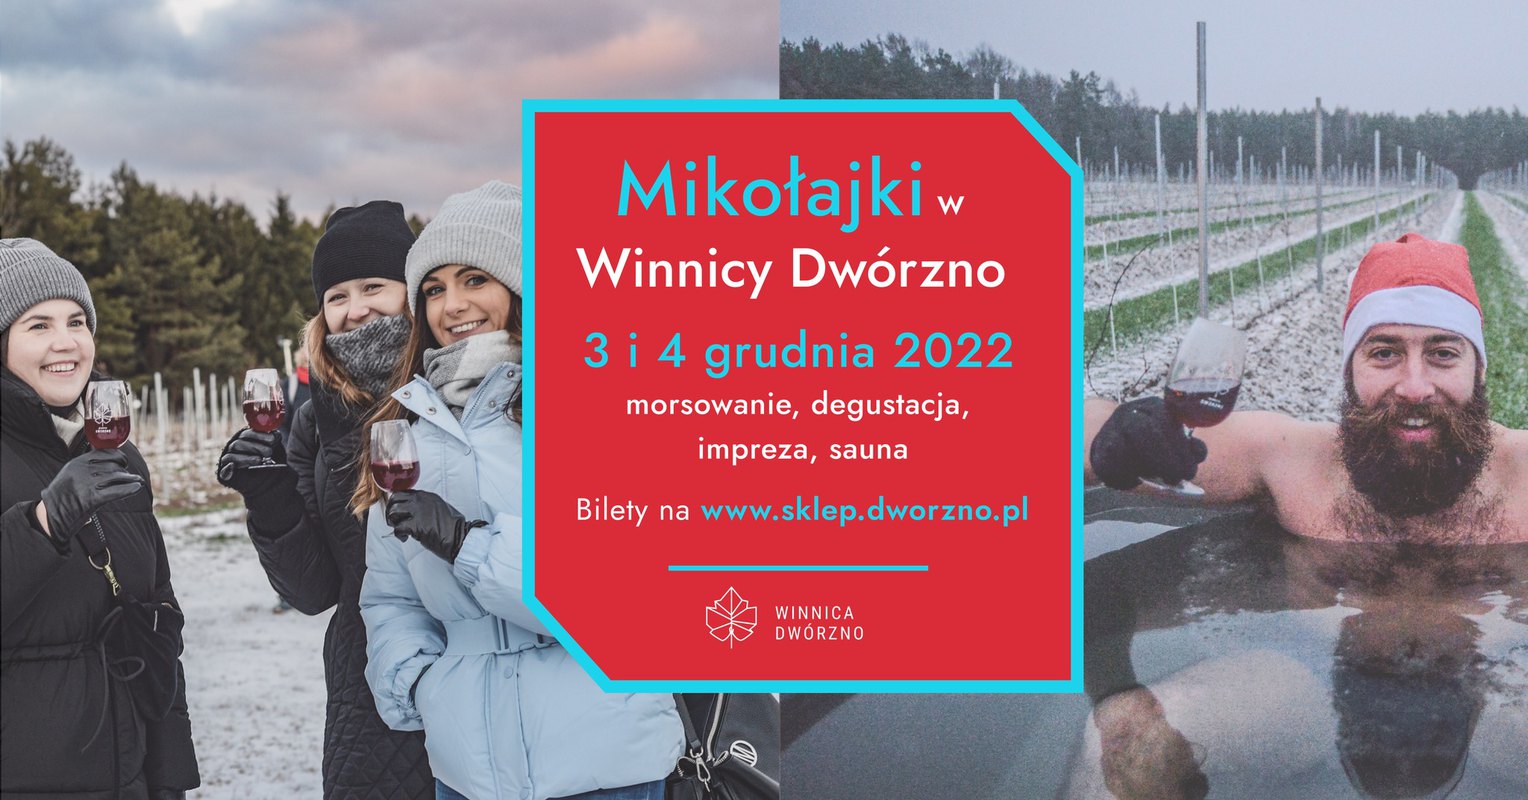 Mikołajki 2022 w Winnicy Dwórzno 3-4.12 - morsowanie, degustacja, sauna, impreza